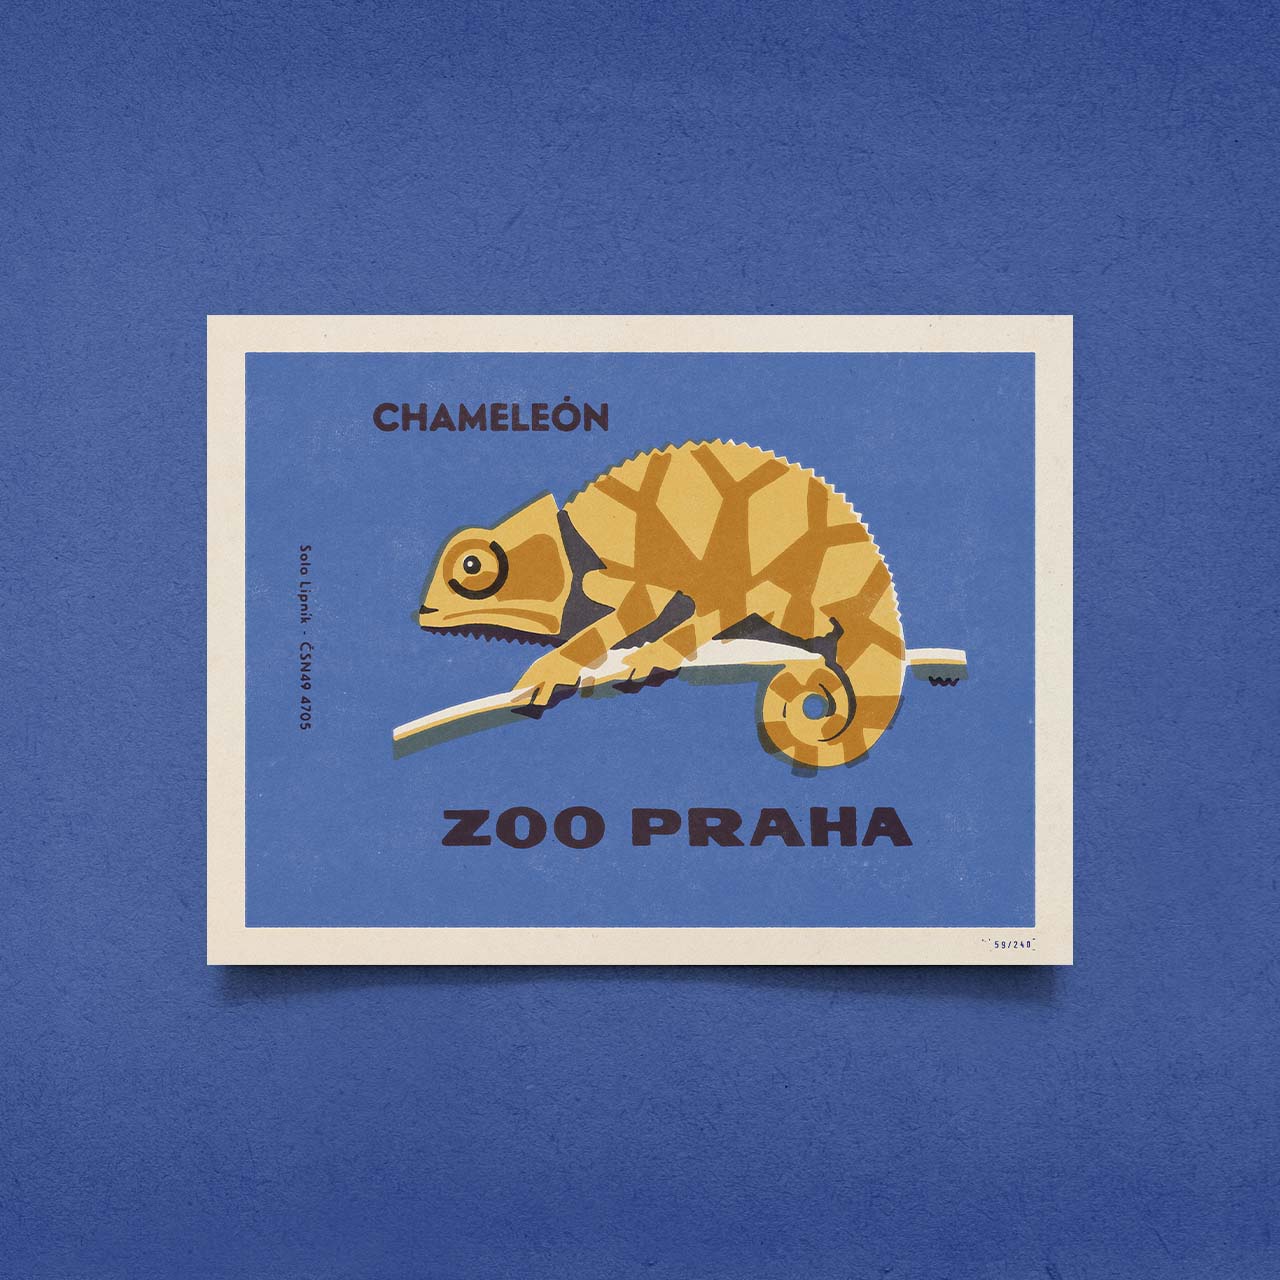 Prague Zoo - Chameleon - Poster 40x30 cm 